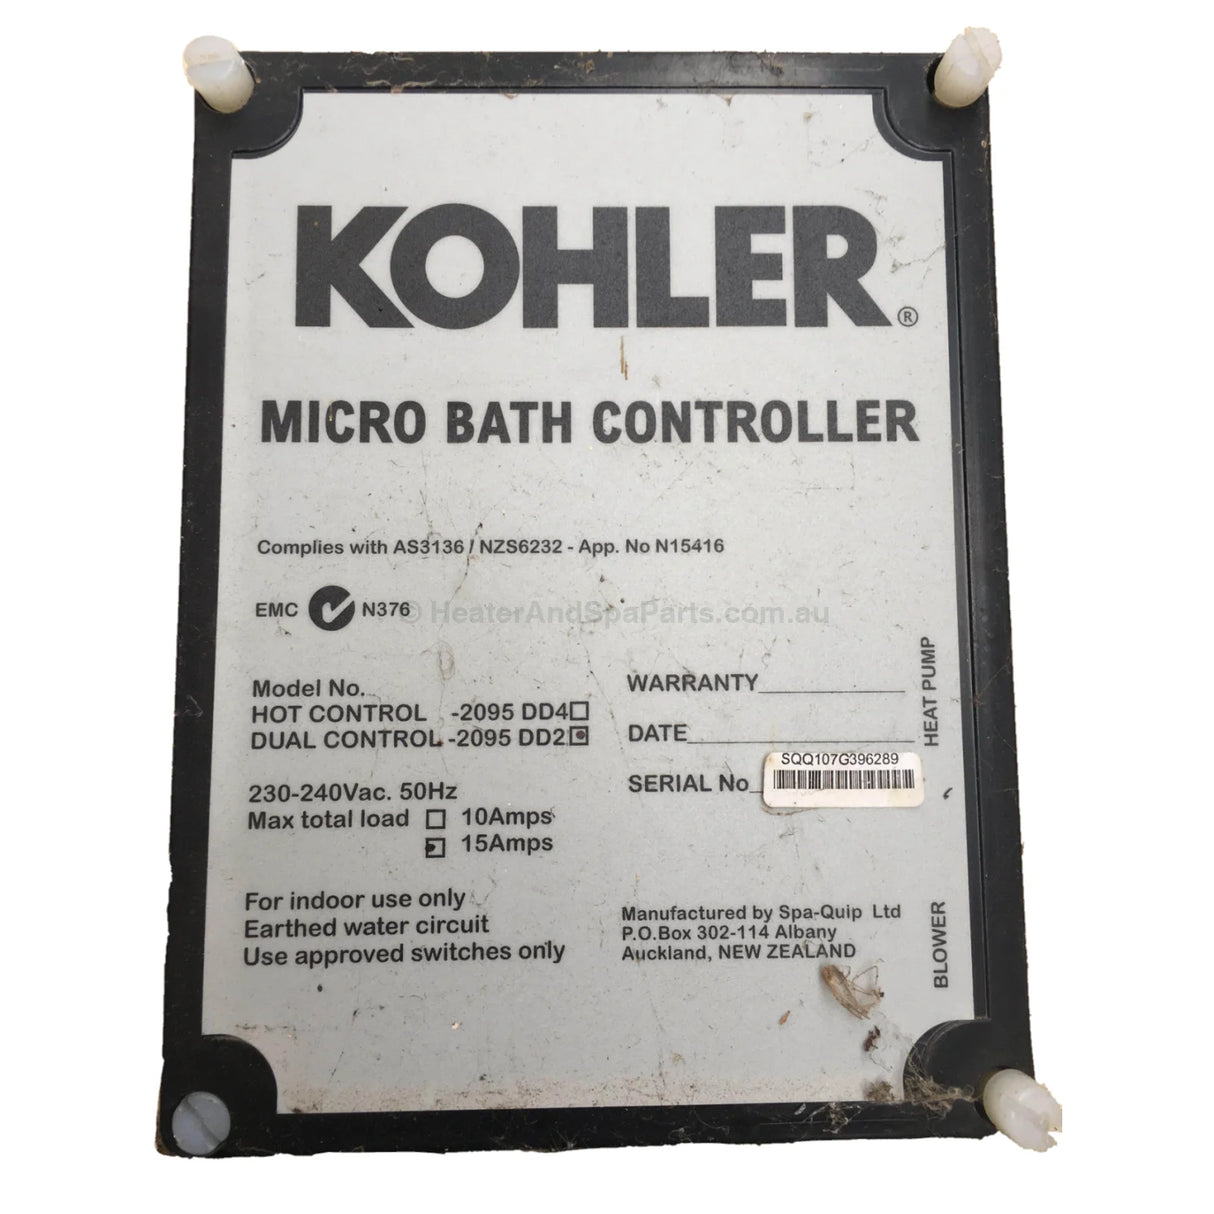 Kohler Micro Bath / Air Bath Controller - Heater and Spa Parts